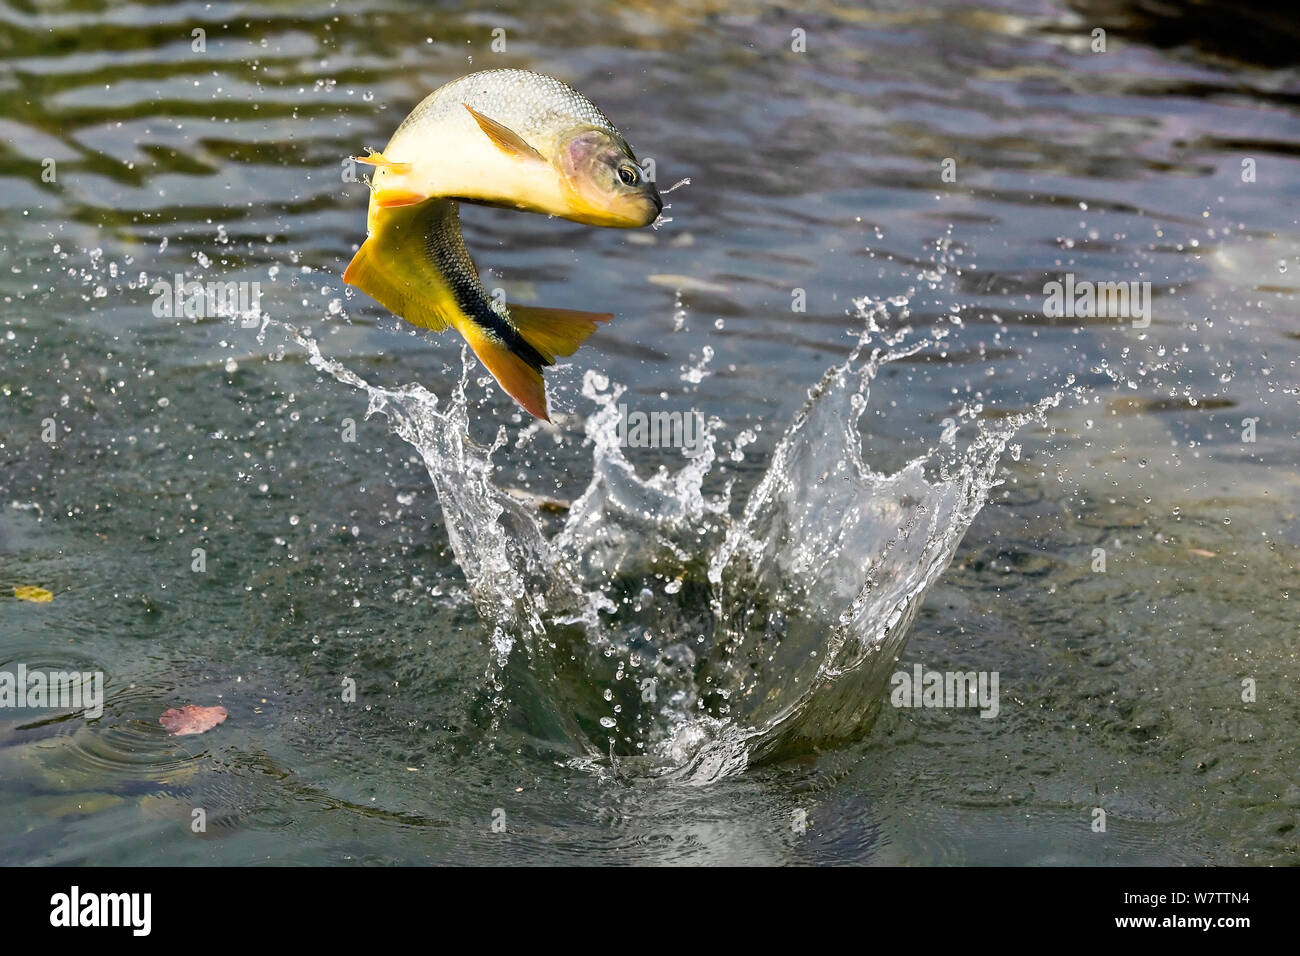 Piraputanga (Brycon hilarii) pesci saltare per la cattura di insetti. Bonito, Mato Grosso do Sul, Brasile Foto Stock